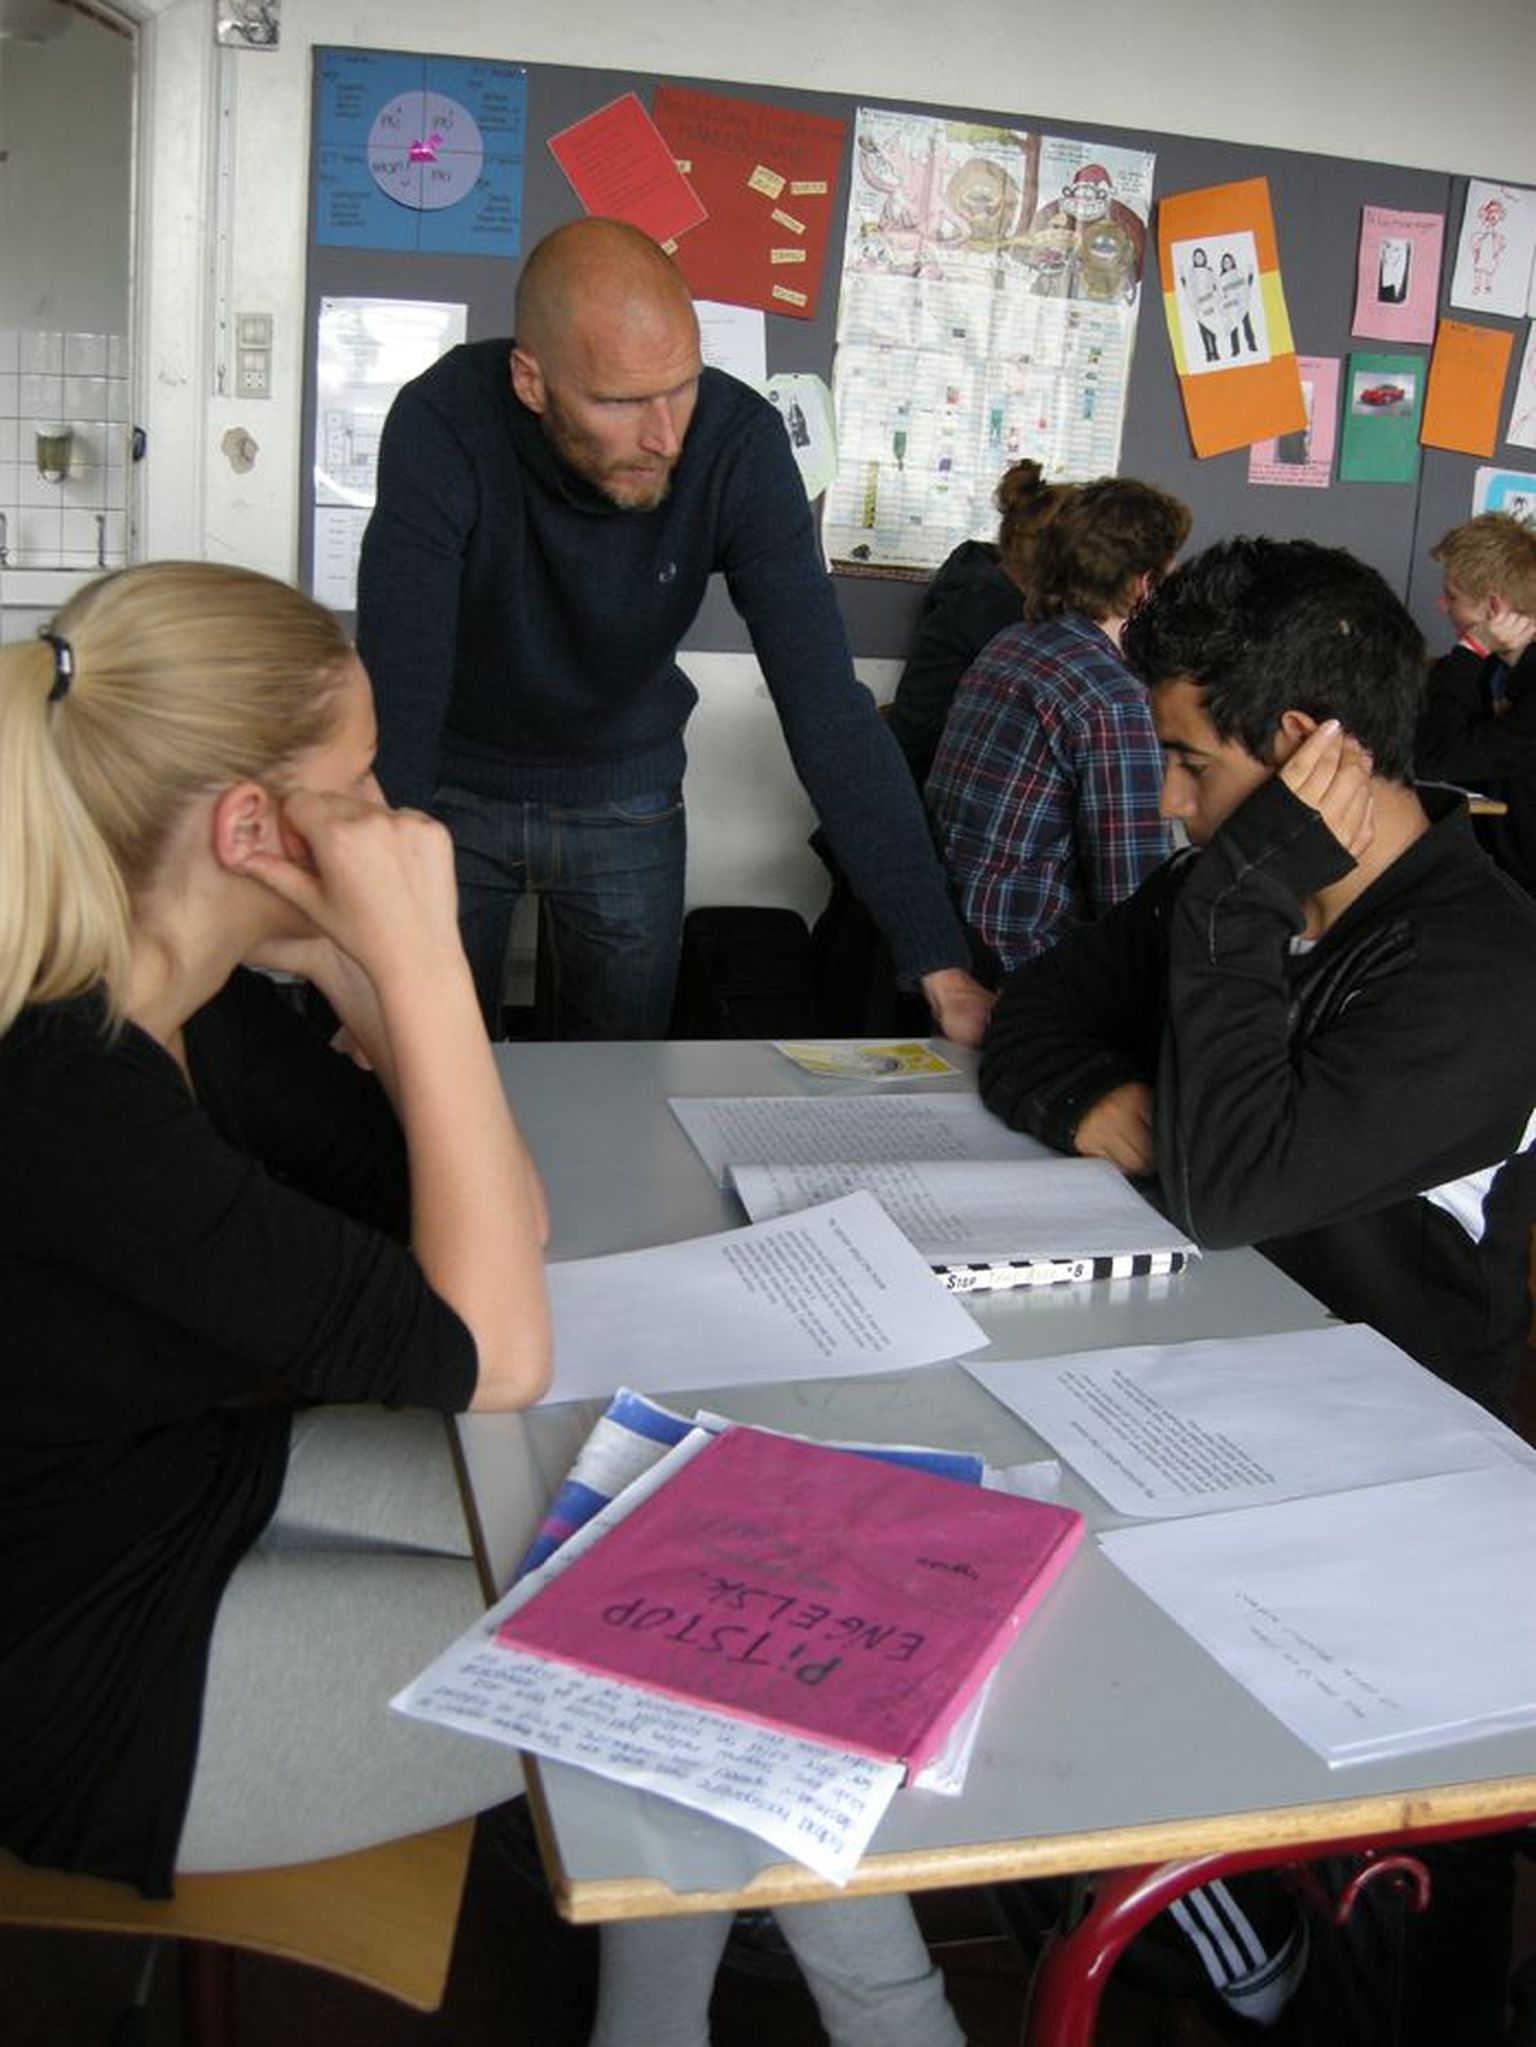 Aarhusis asuva Læssøesgade kooli 8. klassi õpilased inglise keele tunnis Morten Barasinski juhendamisel uusi teadmisi omandamas.